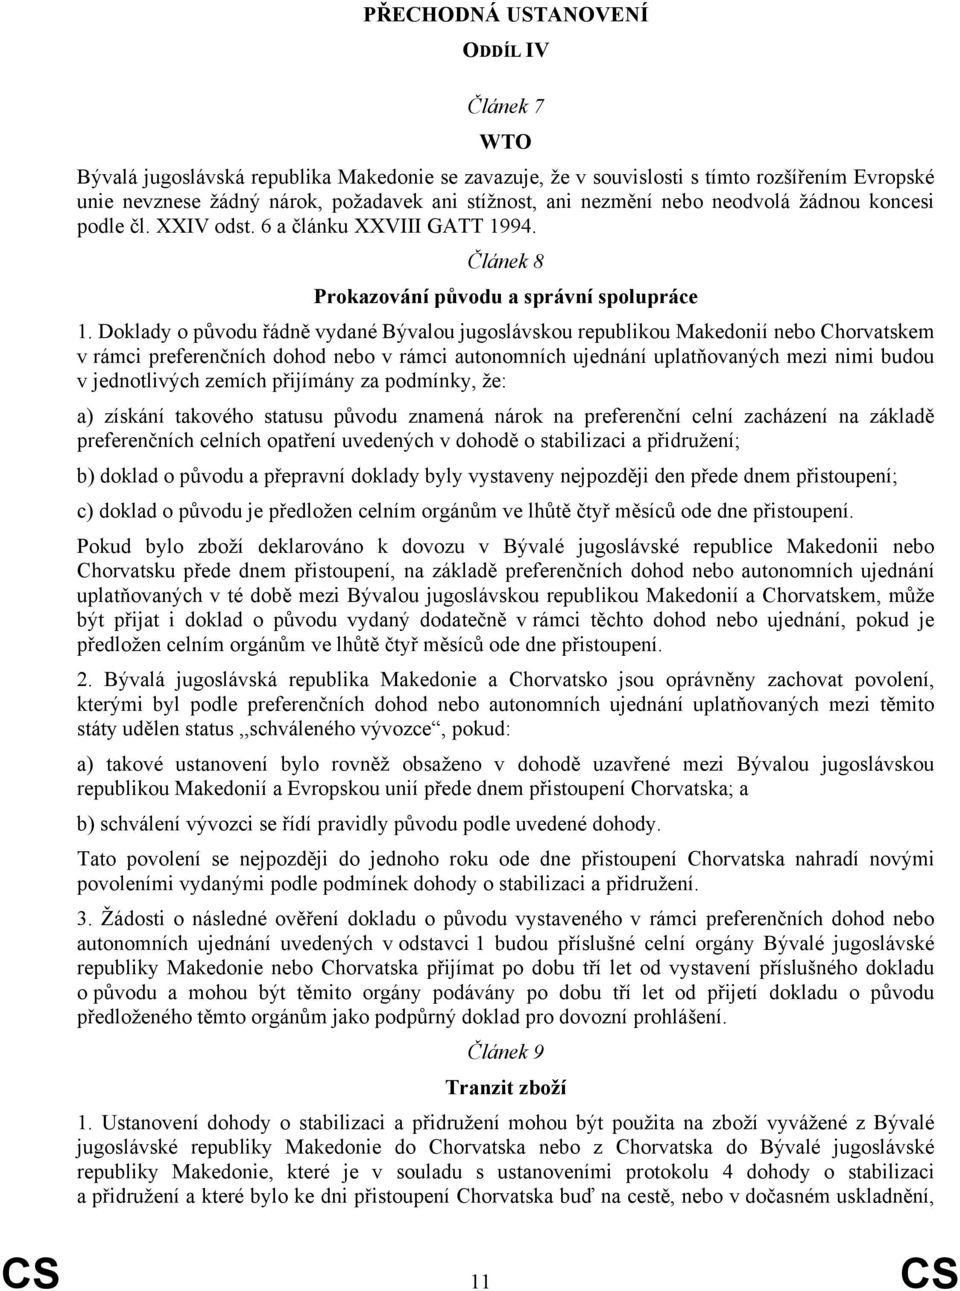 Doklady o původu řádně vydané Bývalou jugoslávskou republikou Makedonií nebo Chorvatskem v rámci preferenčních dohod nebo v rámci autonomních ujednání uplatňovaných mezi nimi budou v jednotlivých